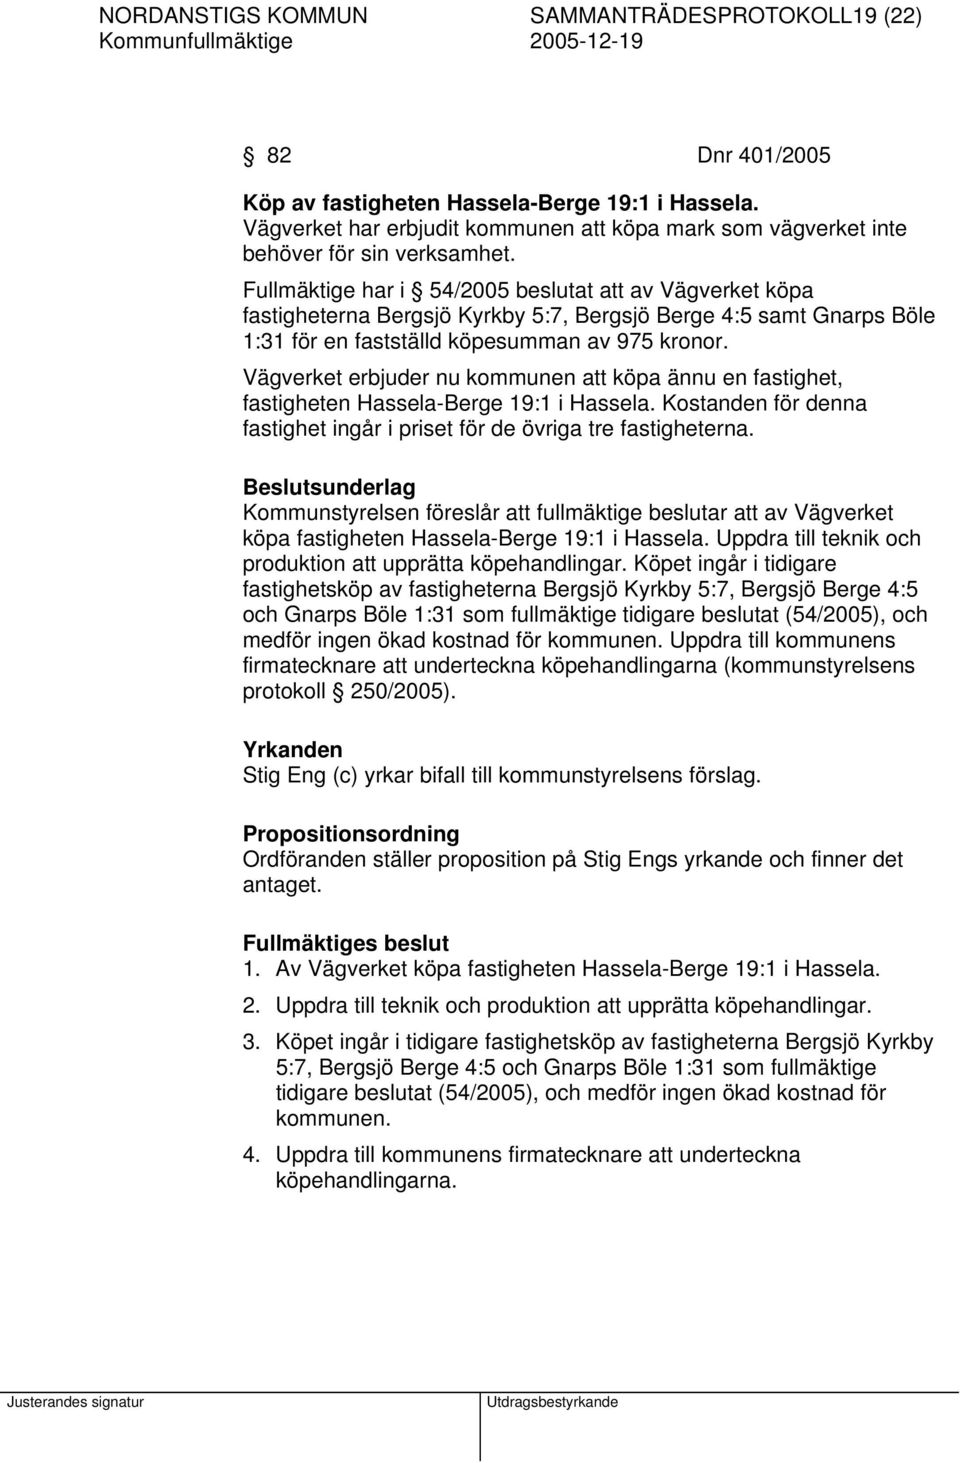 Fullmäktige har i 54/2005 beslutat att av Vägverket köpa fastigheterna Bergsjö Kyrkby 5:7, Bergsjö Berge 4:5 samt Gnarps Böle 1:31 för en fastställd köpesumman av 975 kronor.